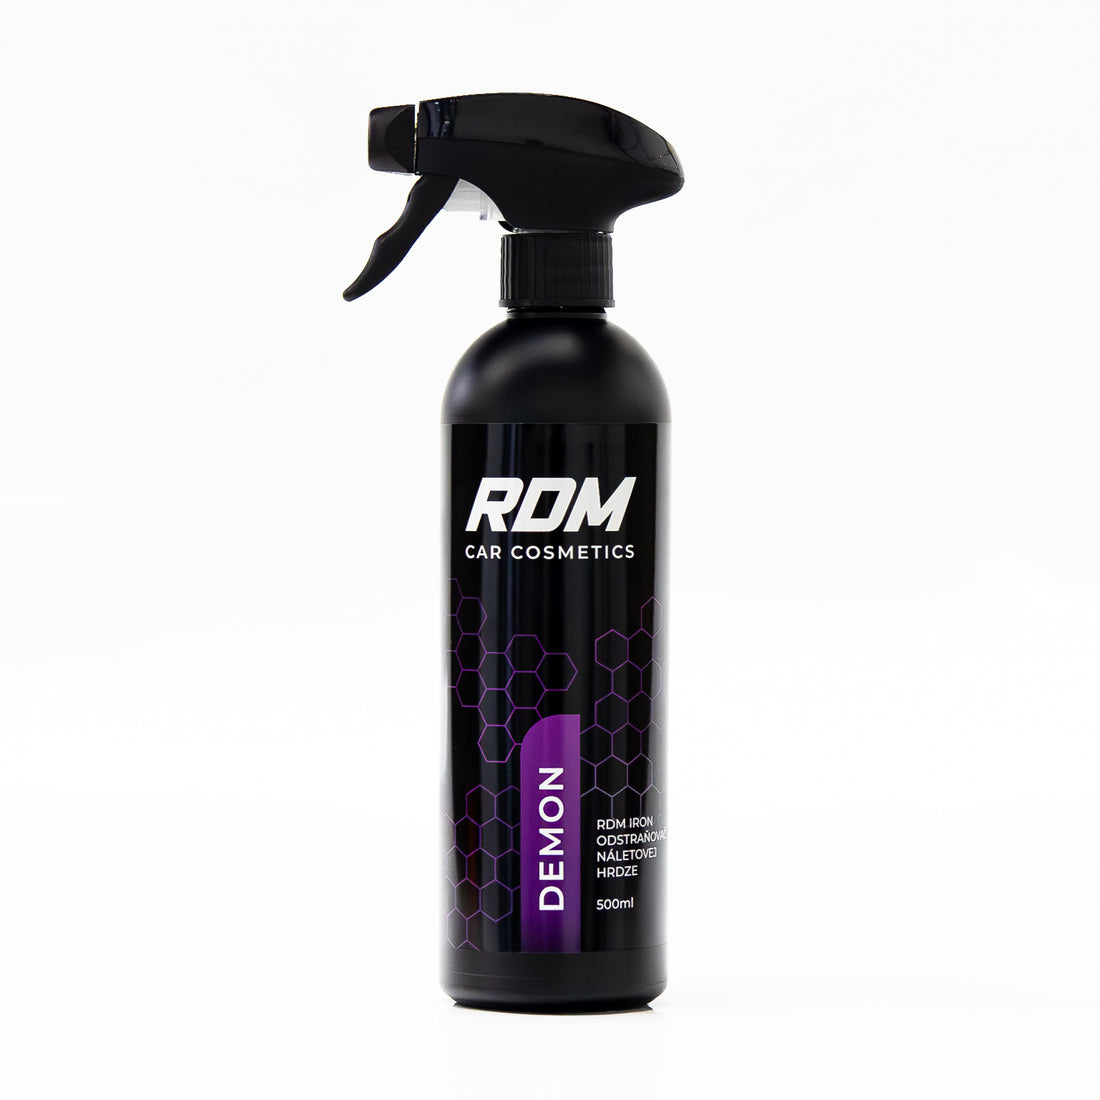 RDM Iron DEMON - Odstraňovač náletovej hrdze 500ml